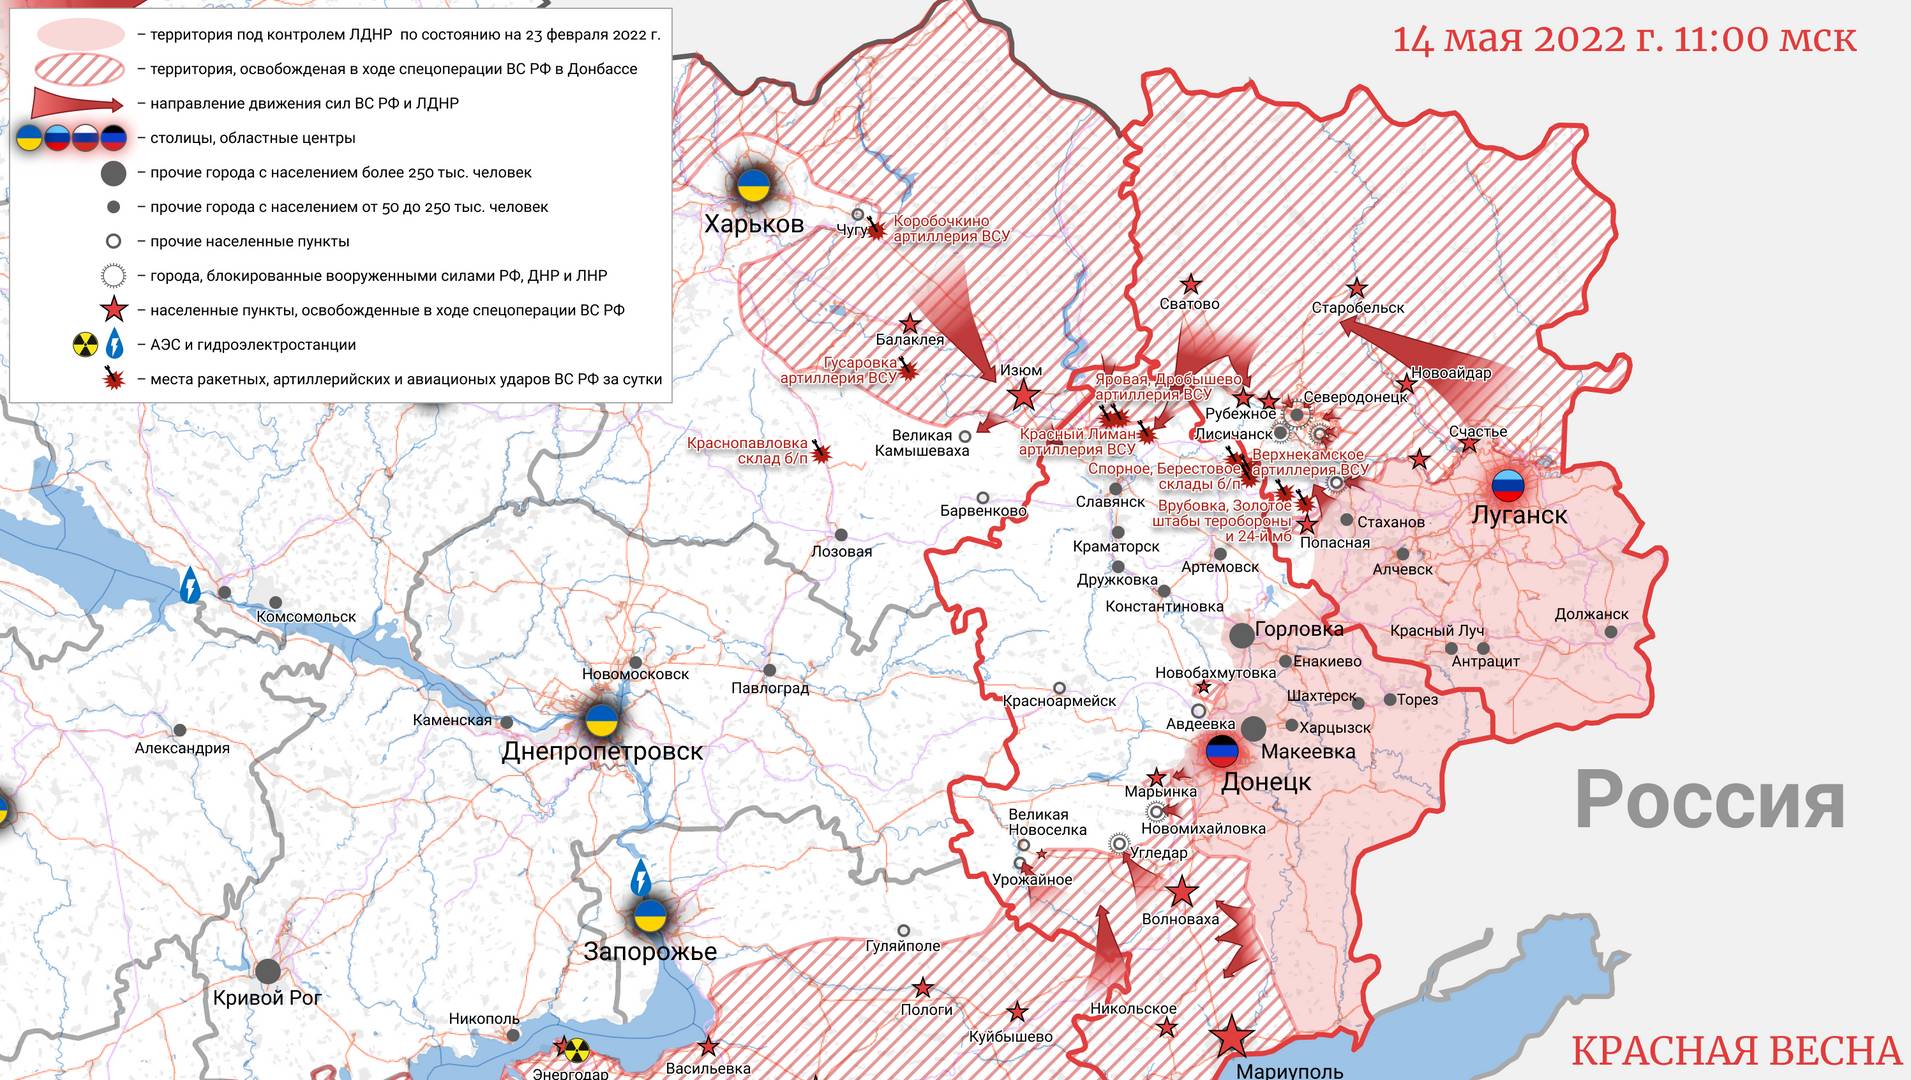 Карта Донбасса 14.05.2022, 11:00 час.